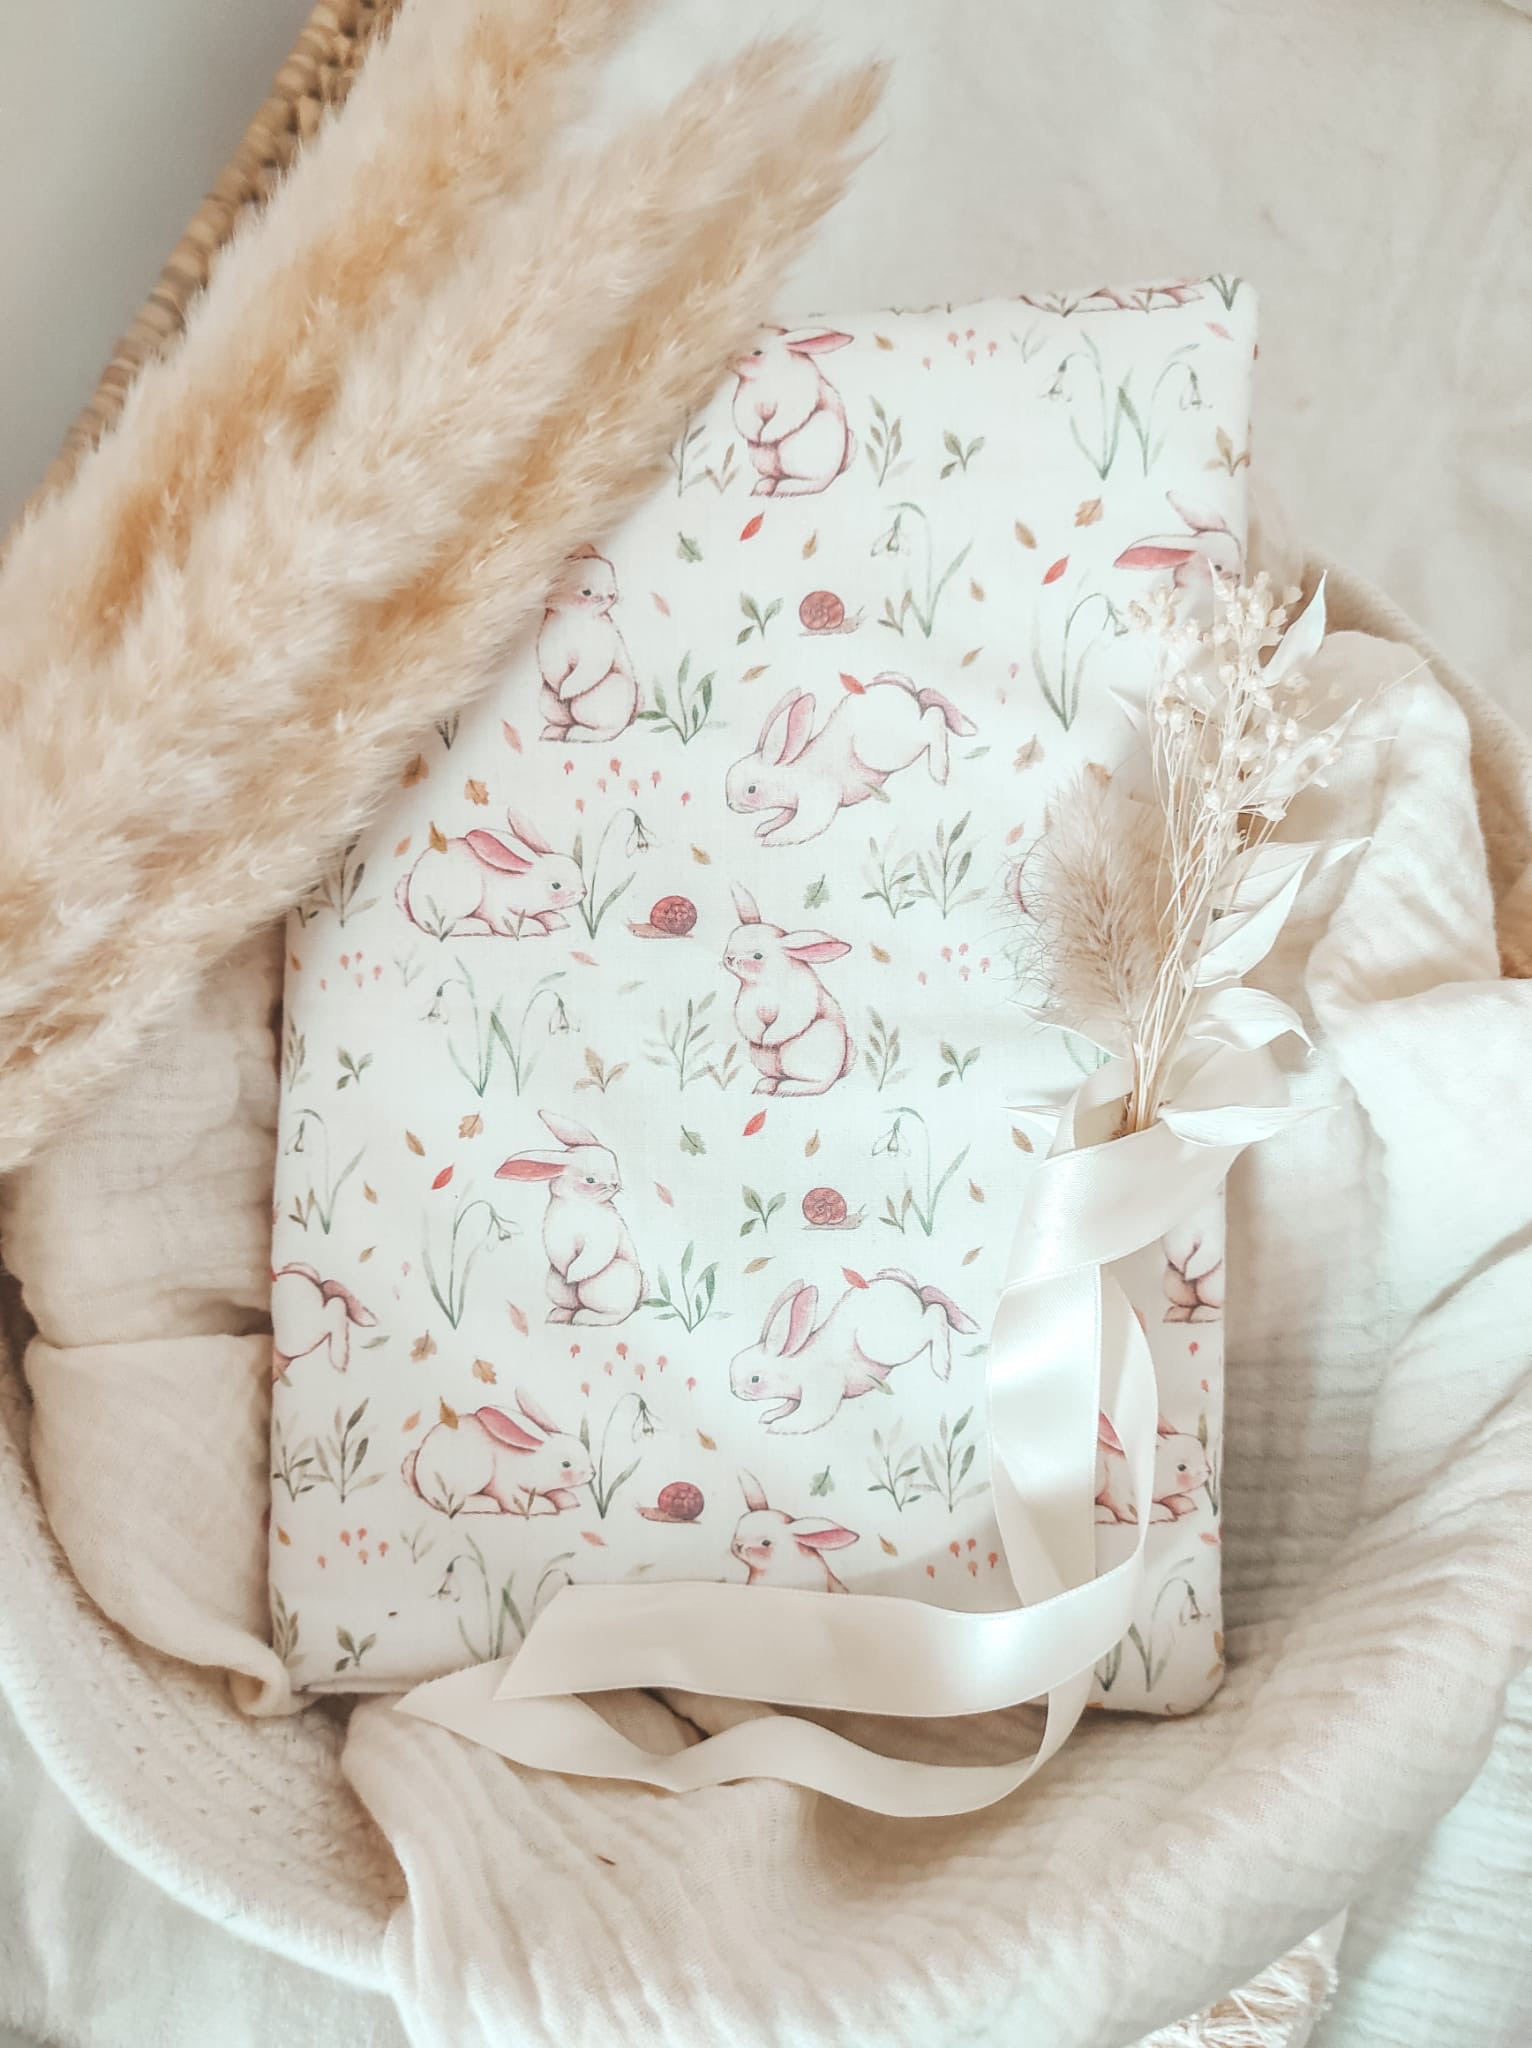 Protège carnet de santé , couverture, petit lapin en simili cuir, bébé fille  coton étoiles, tons gris blanc rose personnalisé prénom -  France